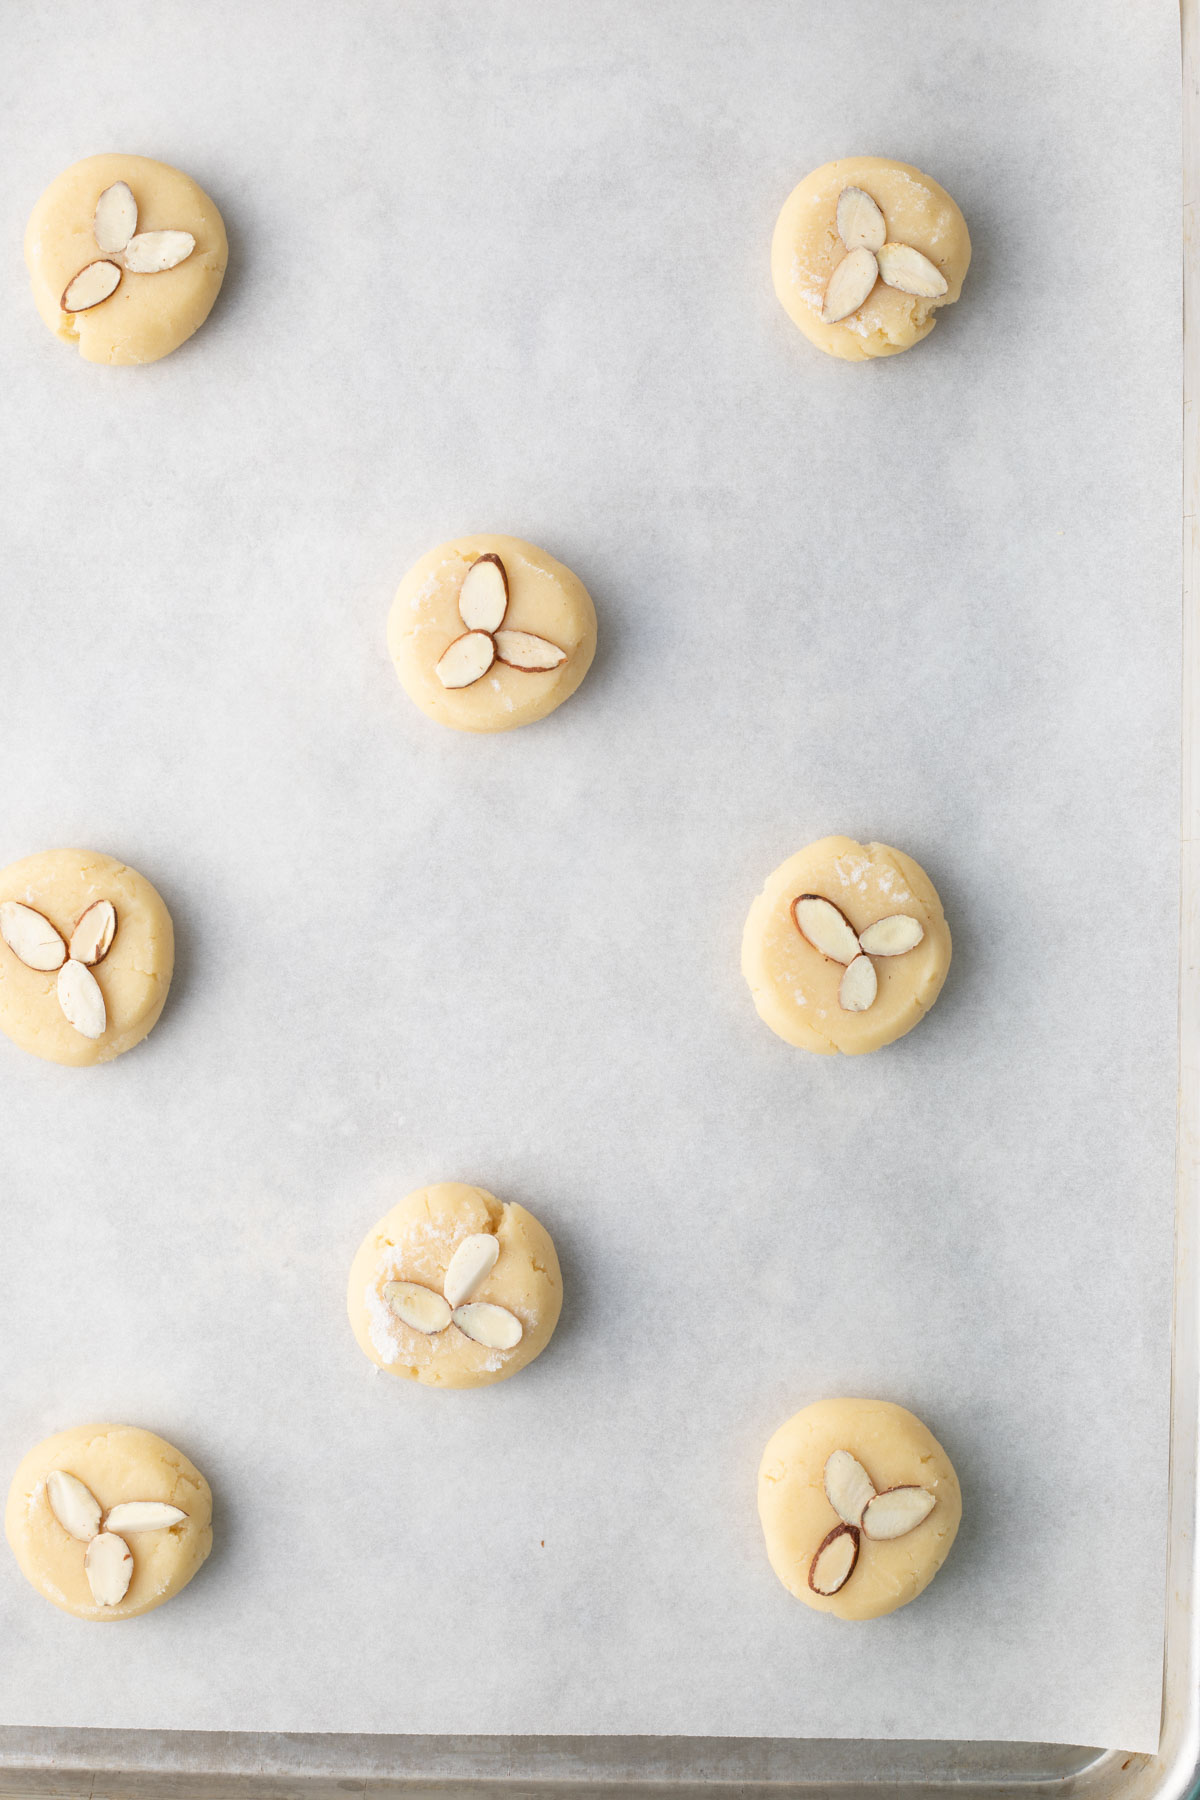 Almond Cookies on baking sheet